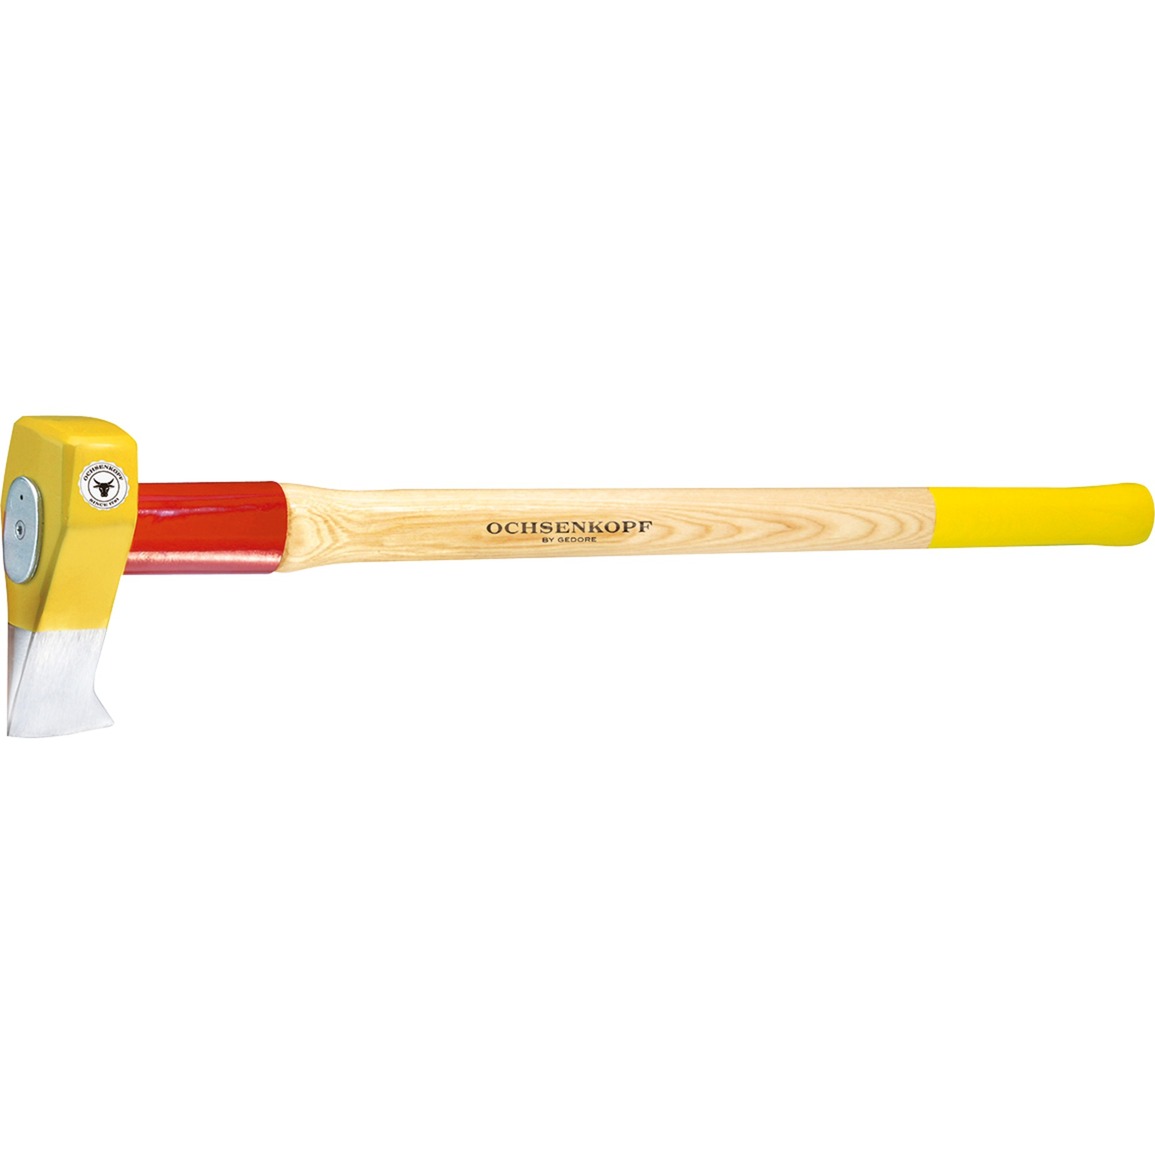 Image of Alternate - PROFI-Holzspalthammer BIG OX, OX 635 H-3009, Axt/Beil online einkaufen bei Alternate